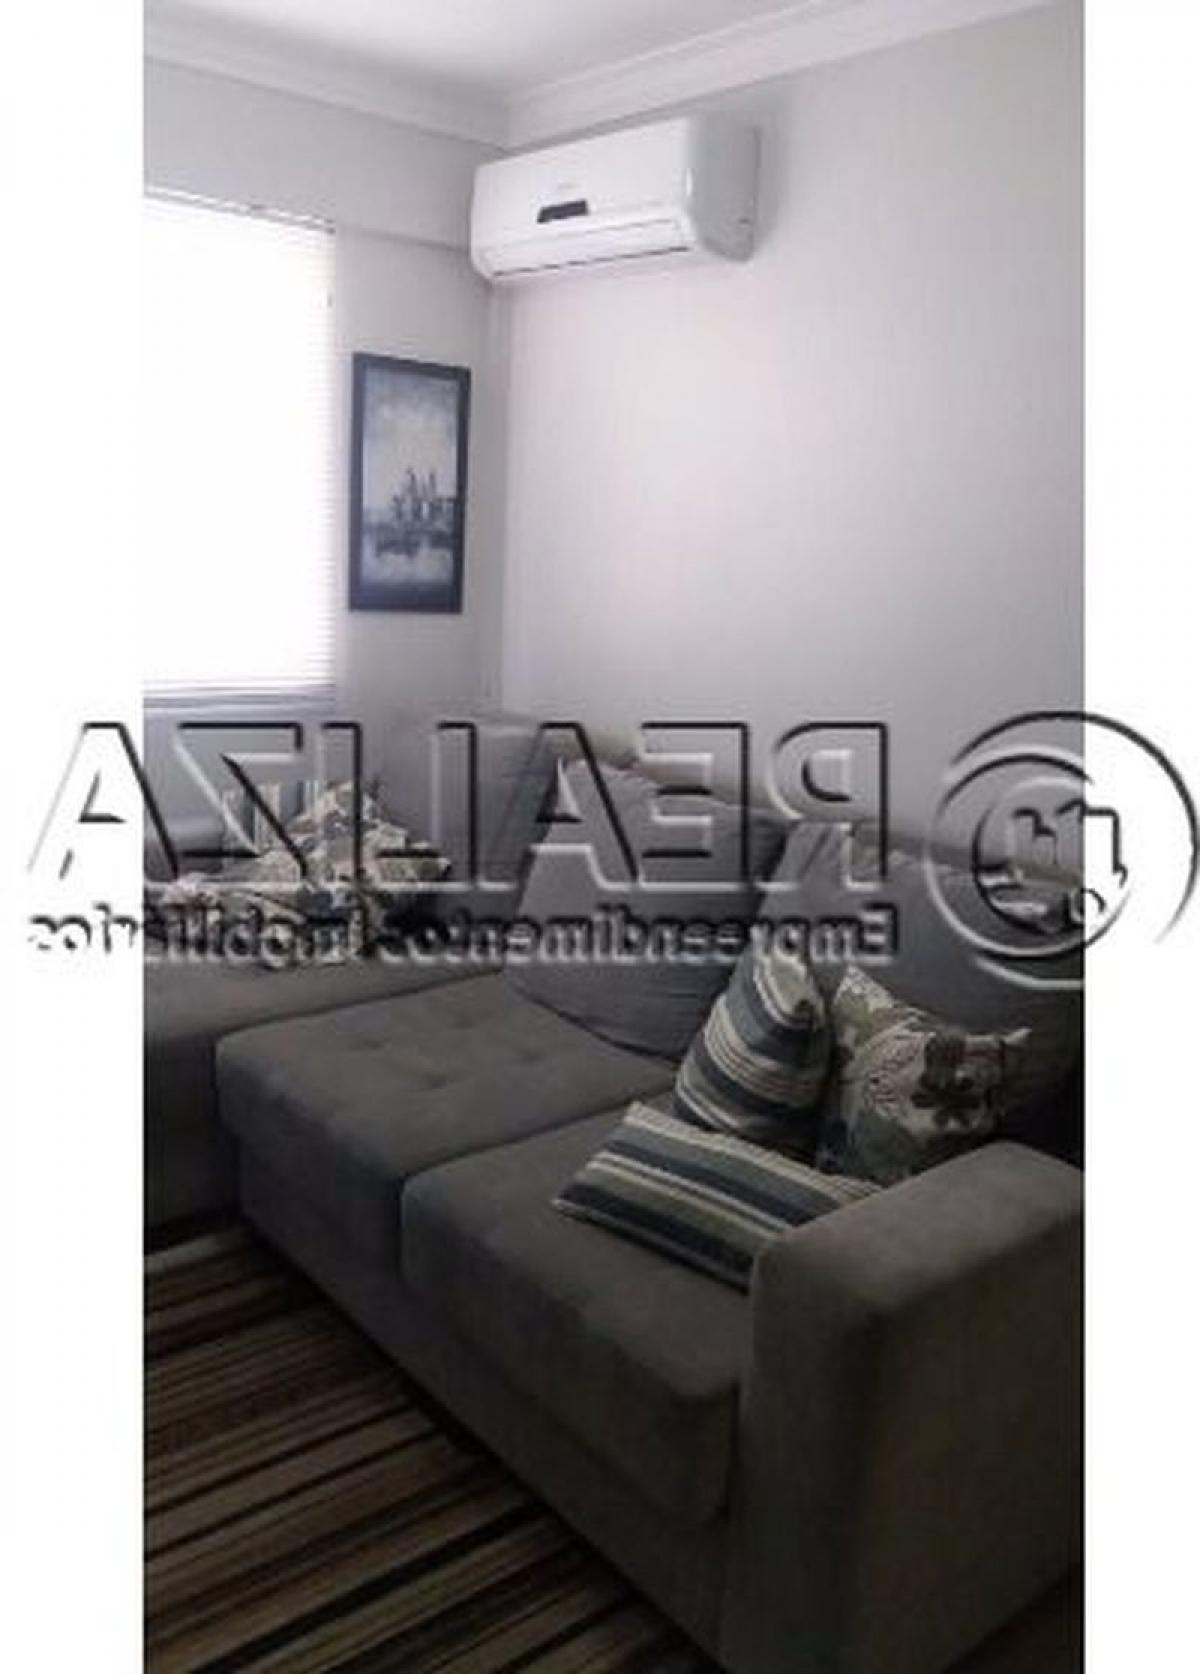 Picture of Apartment For Sale in Ararangua, Santa Catarina, Brazil